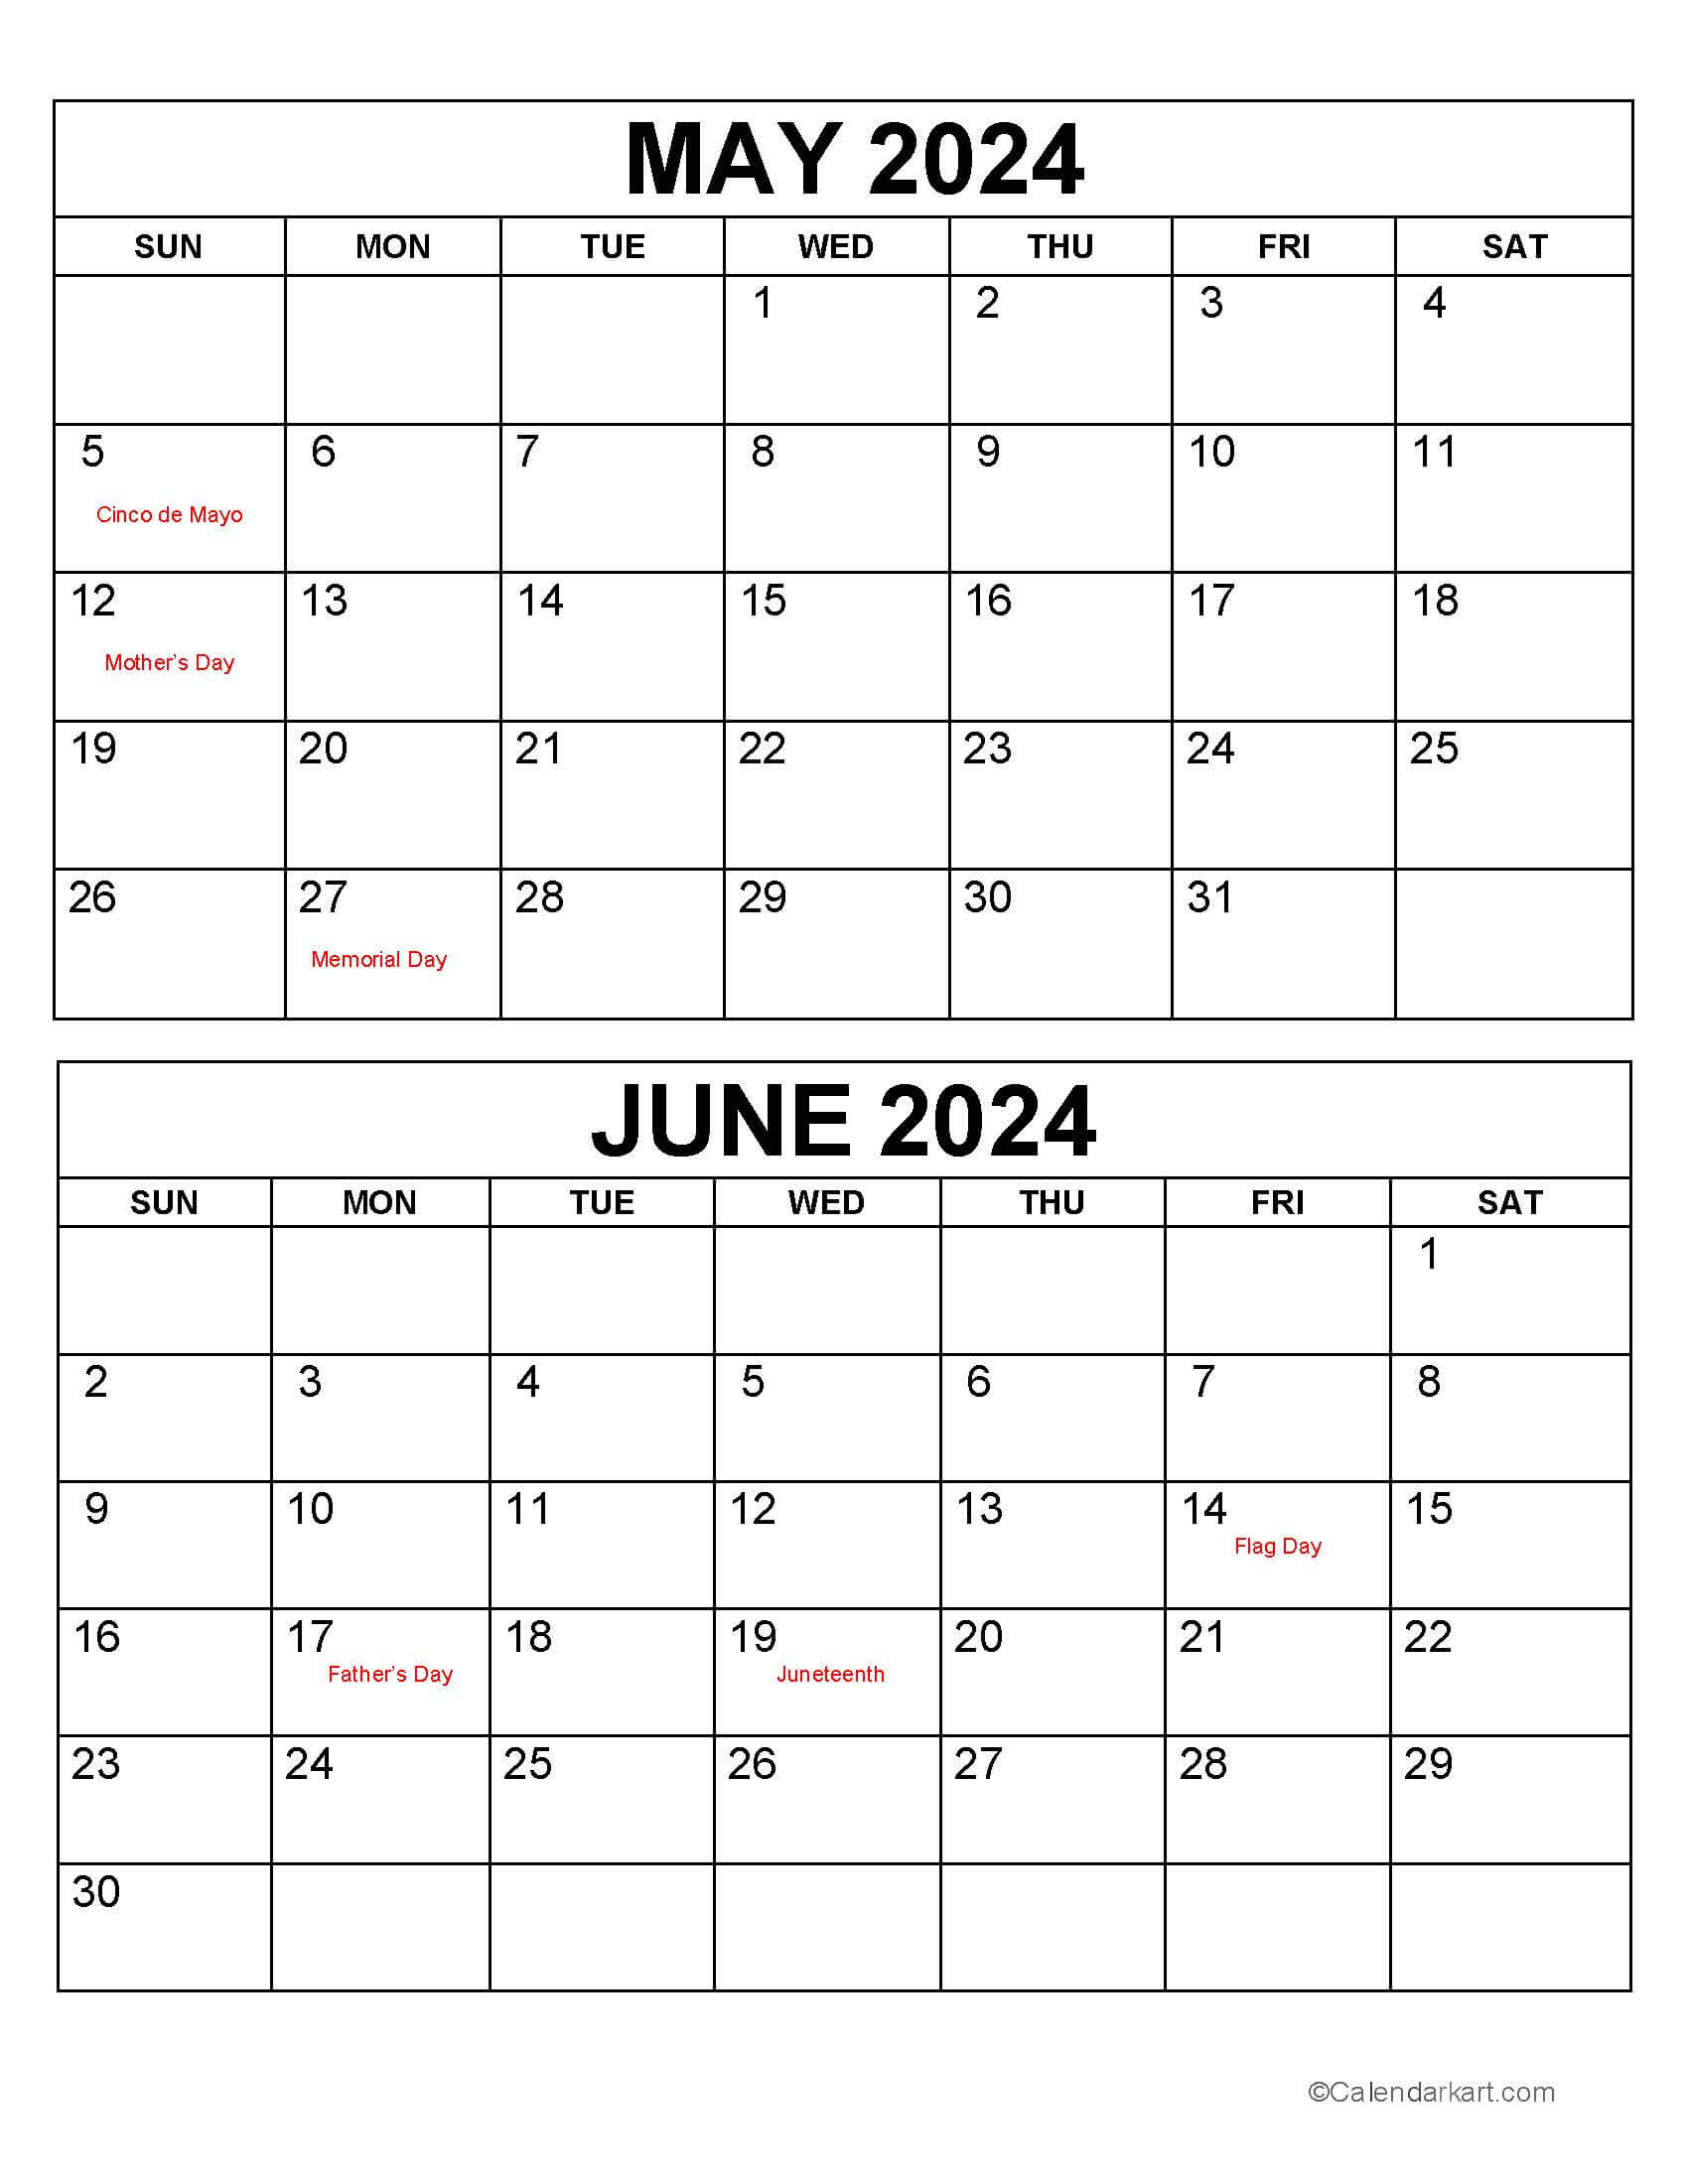 May June 2024 Calendars (3Rd Bi-Monthly) - Calendarkart | Calendar 2024 May And June